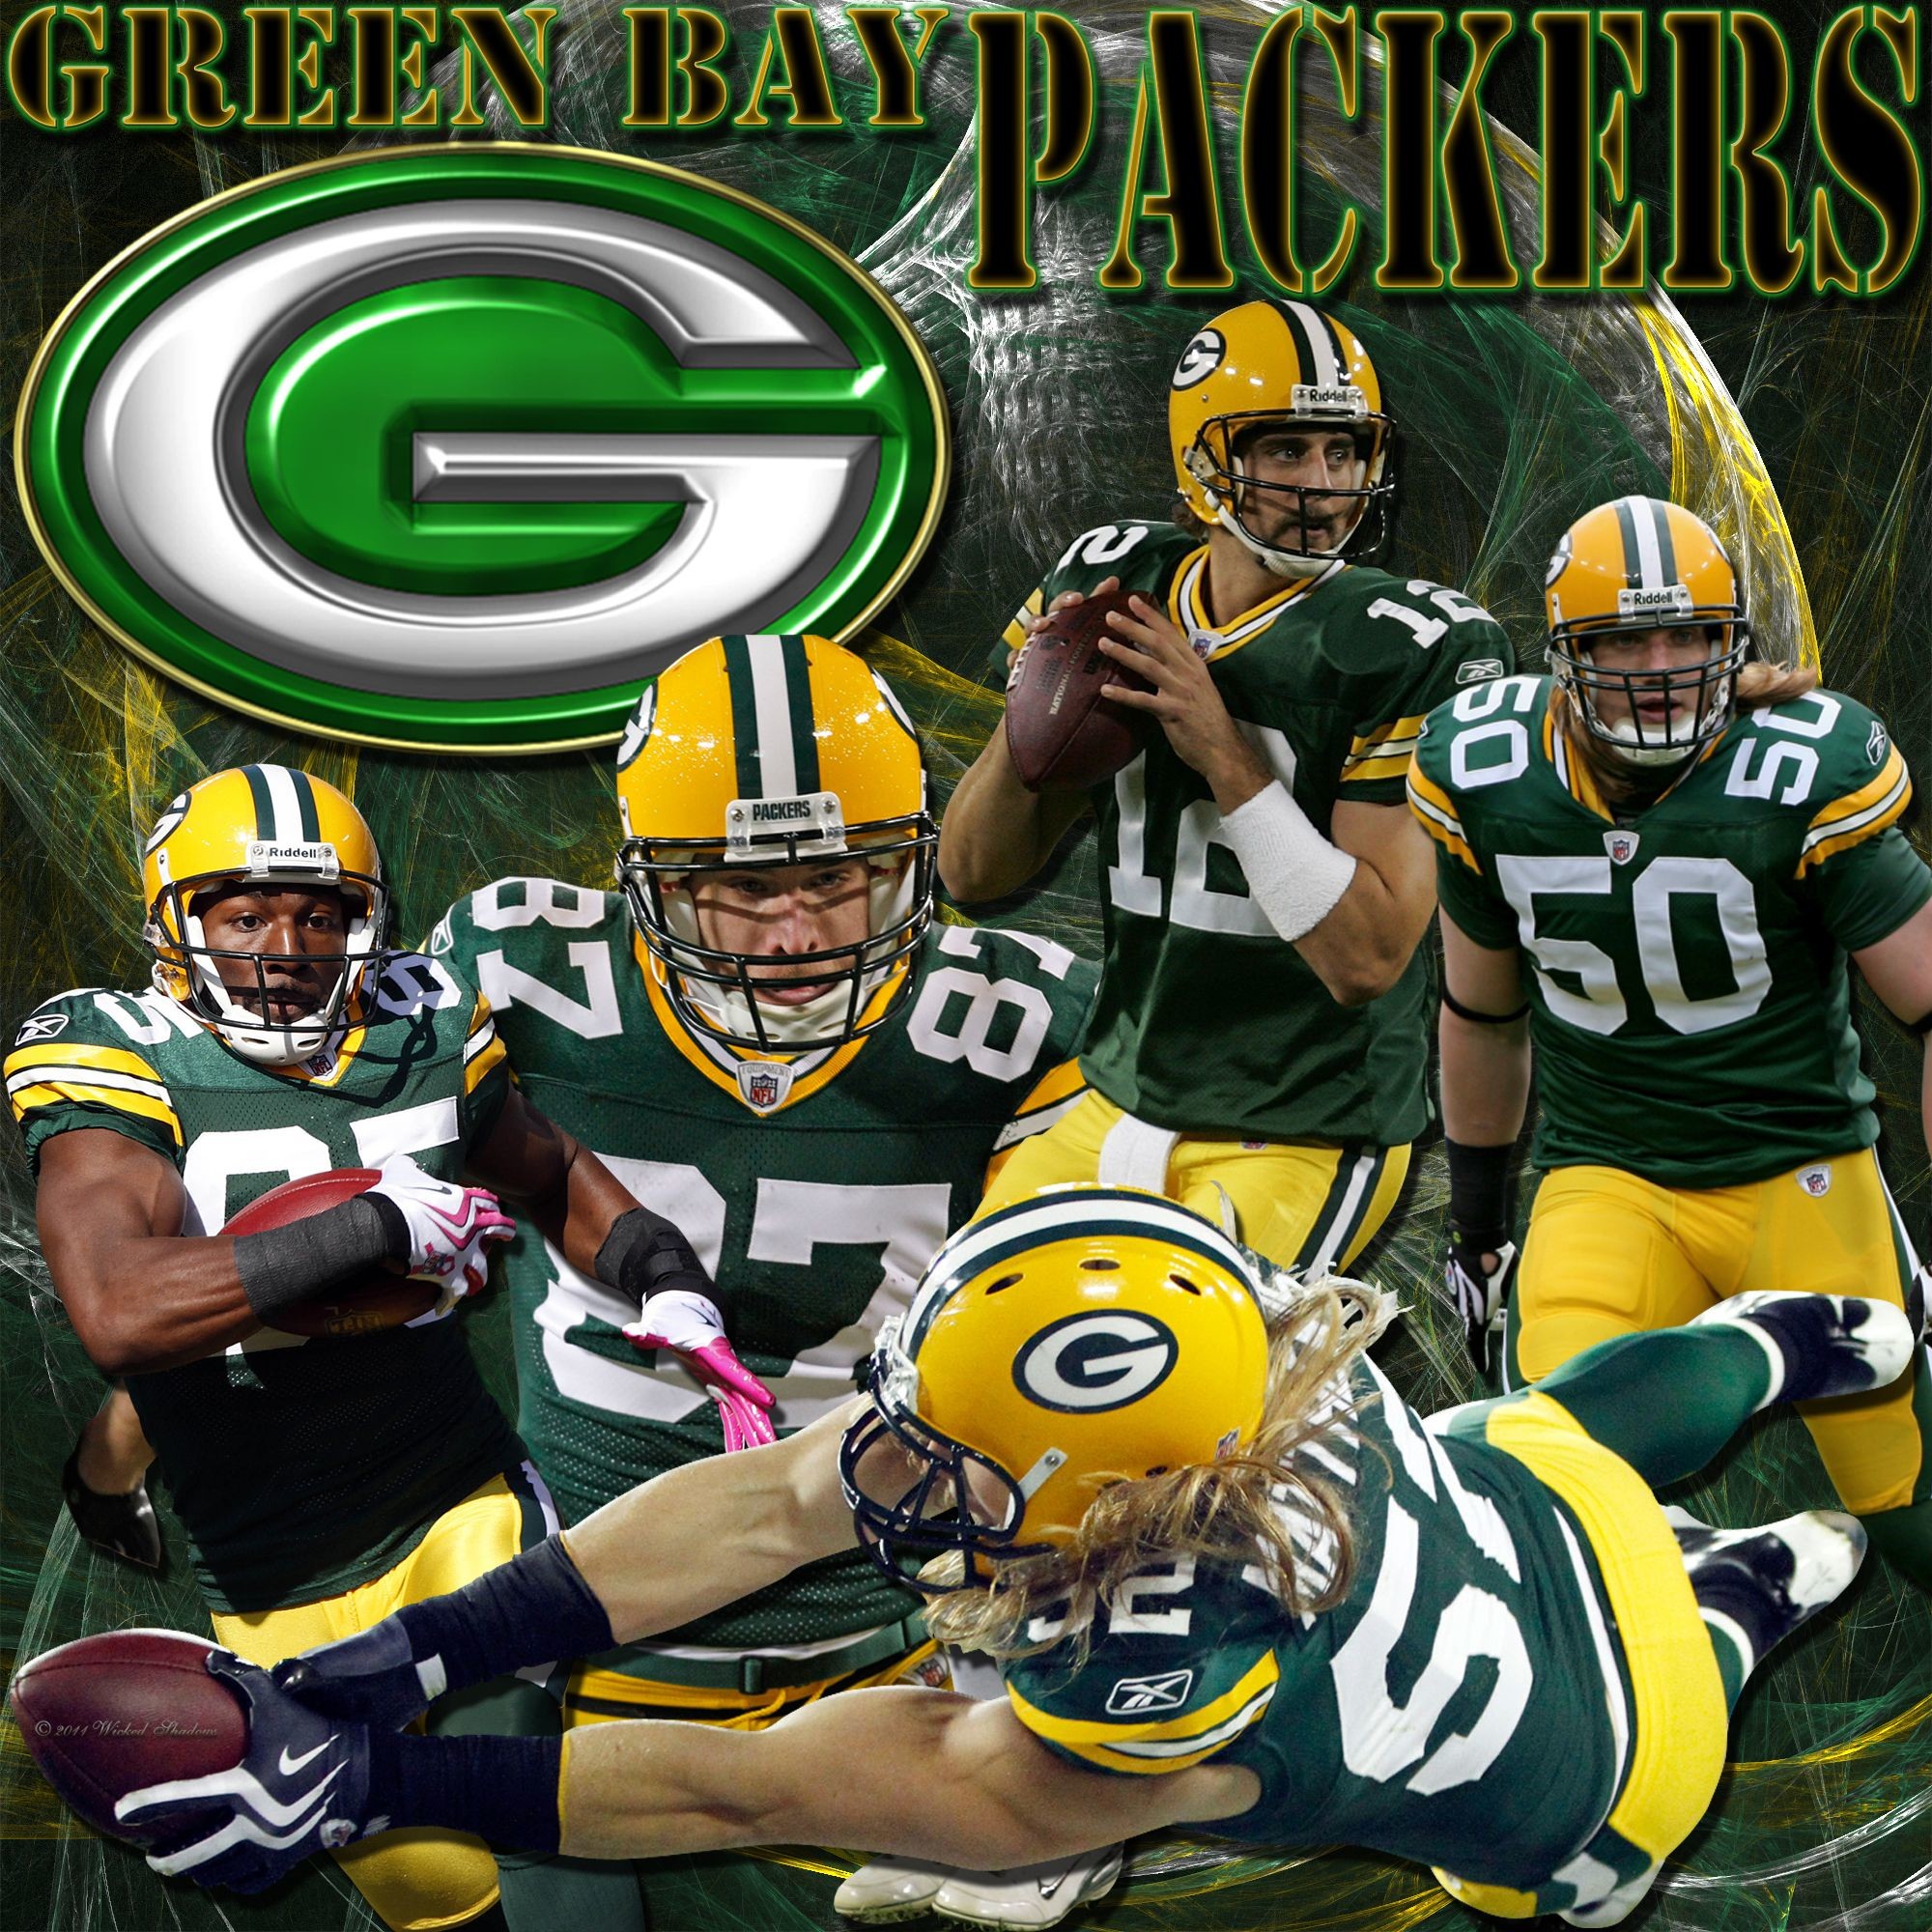 2000x2000 Green Bay Packers Team Wallpaper - Hot NFL Wallpaper Site